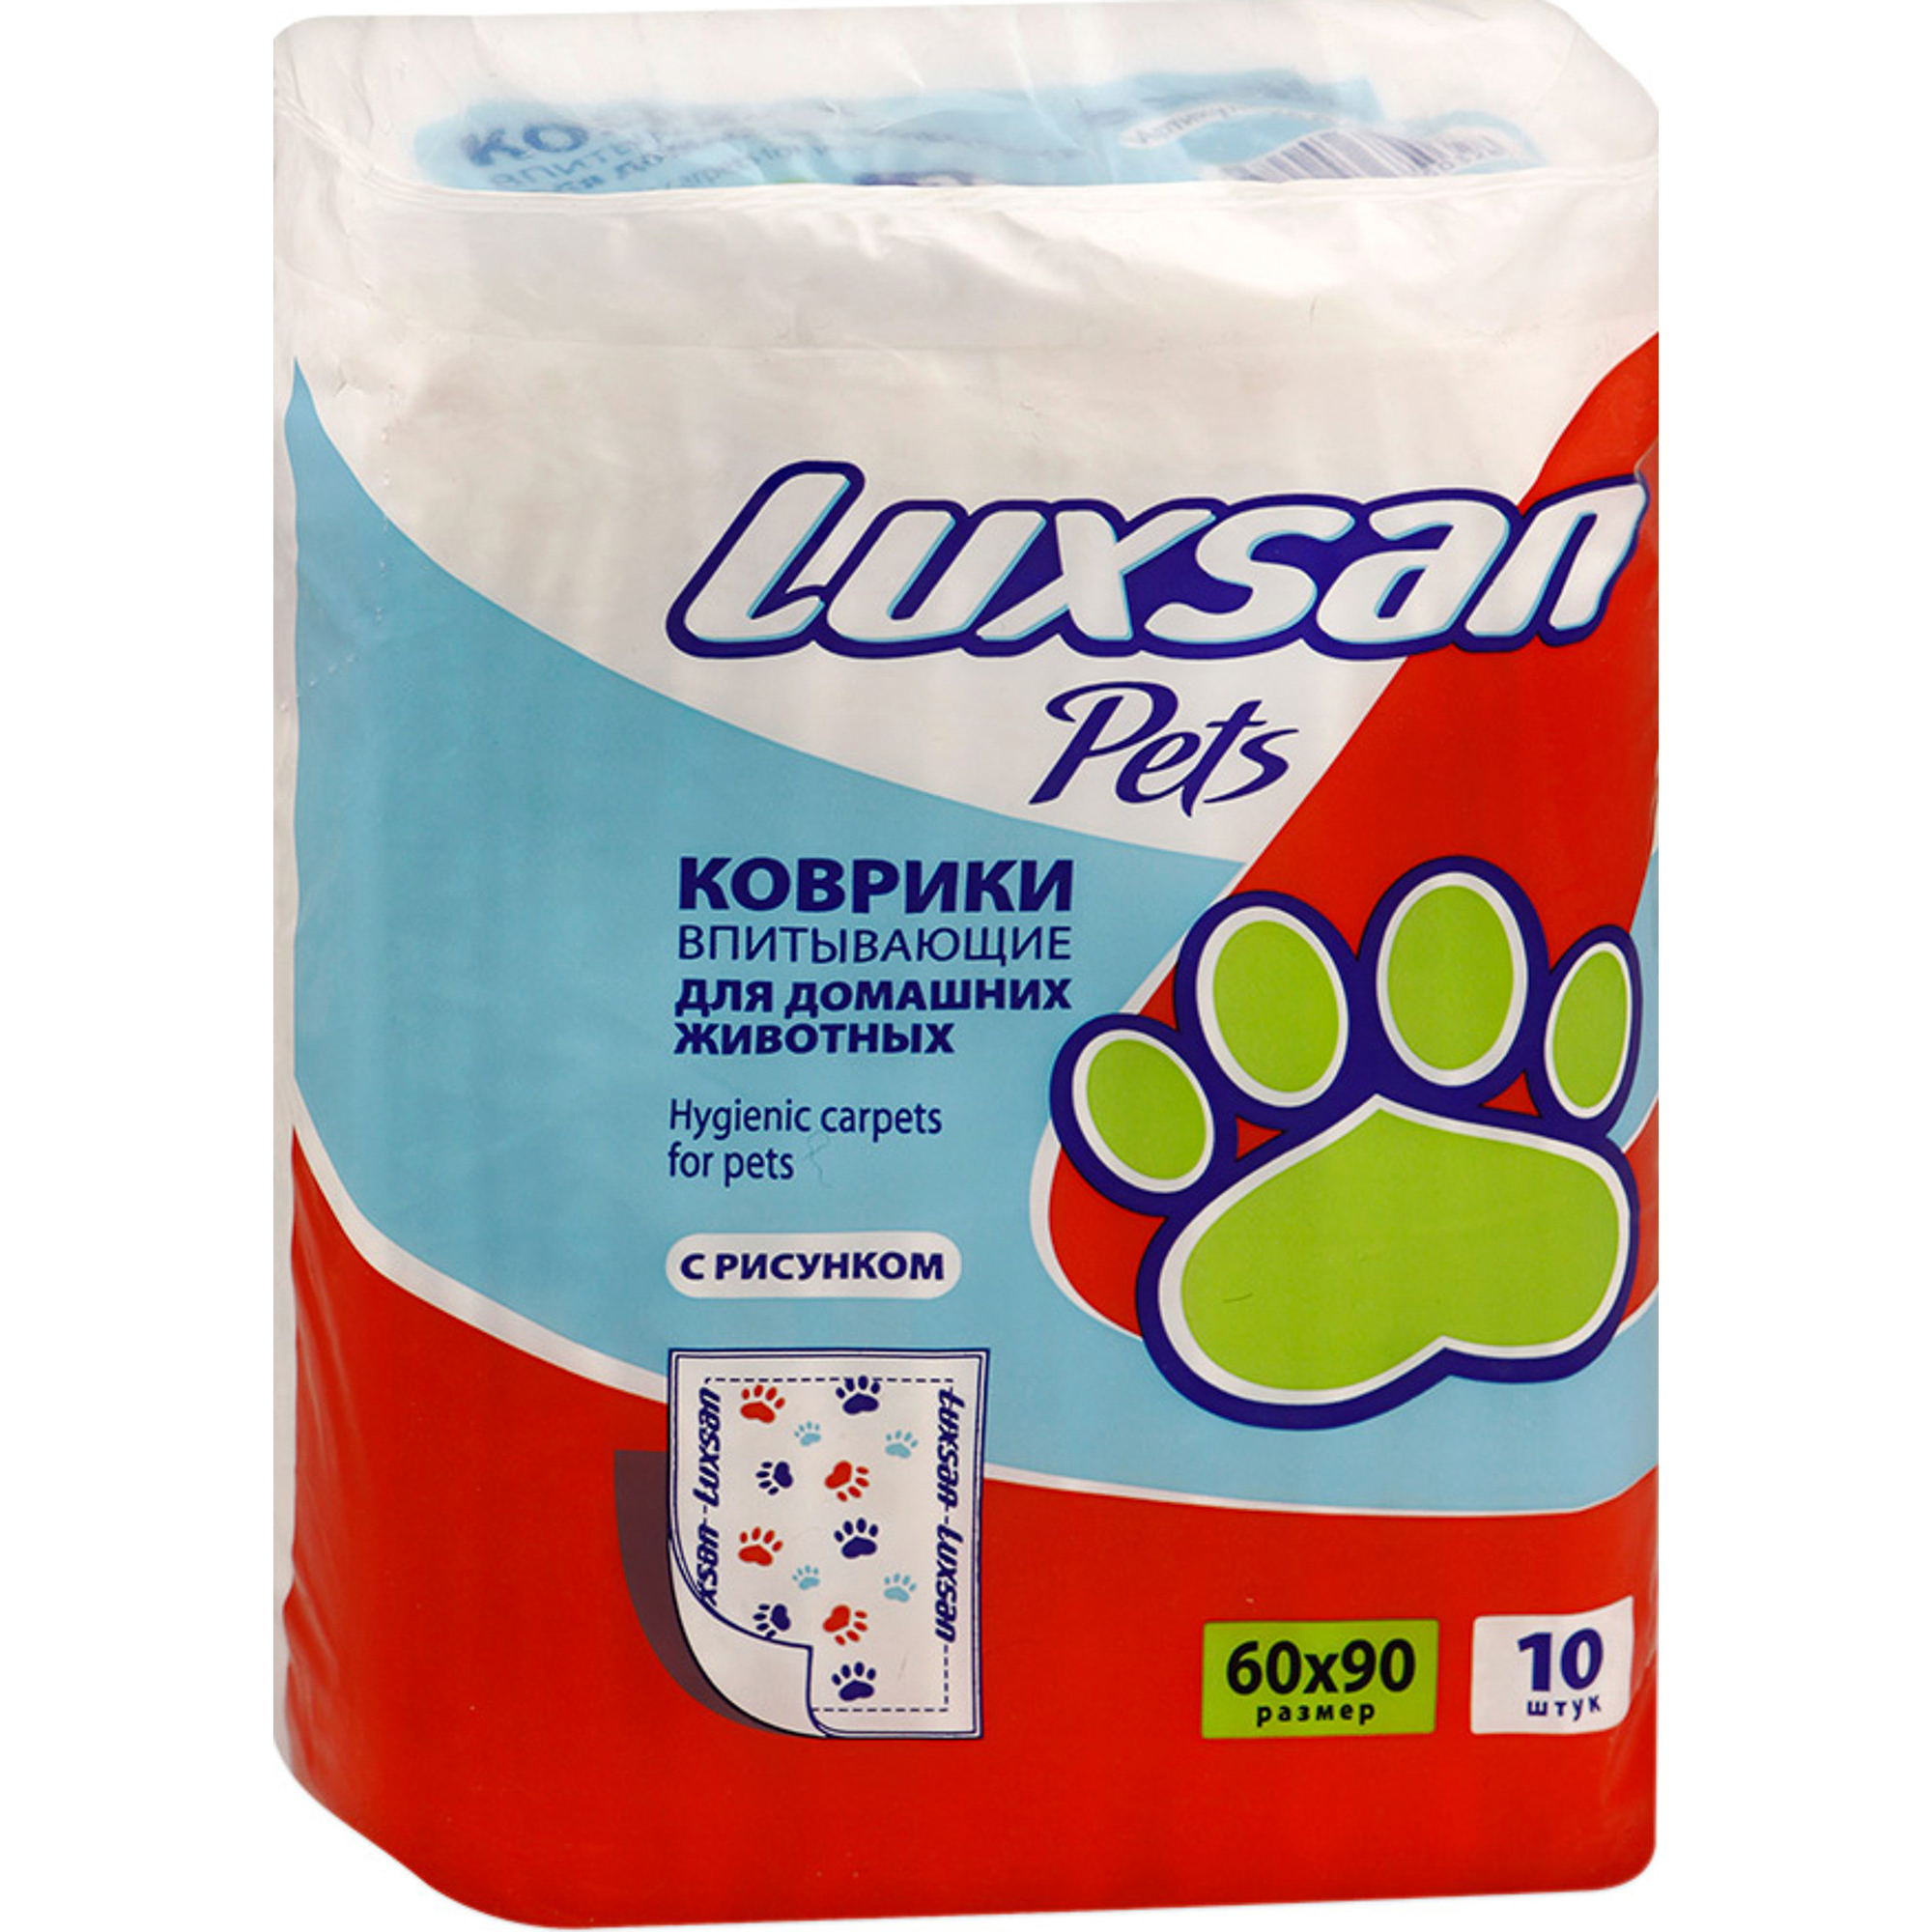 Коврик для кошек и собак Luxsan Premium с рисунком 60х90 см 10 шт, размер 20x17x29 см